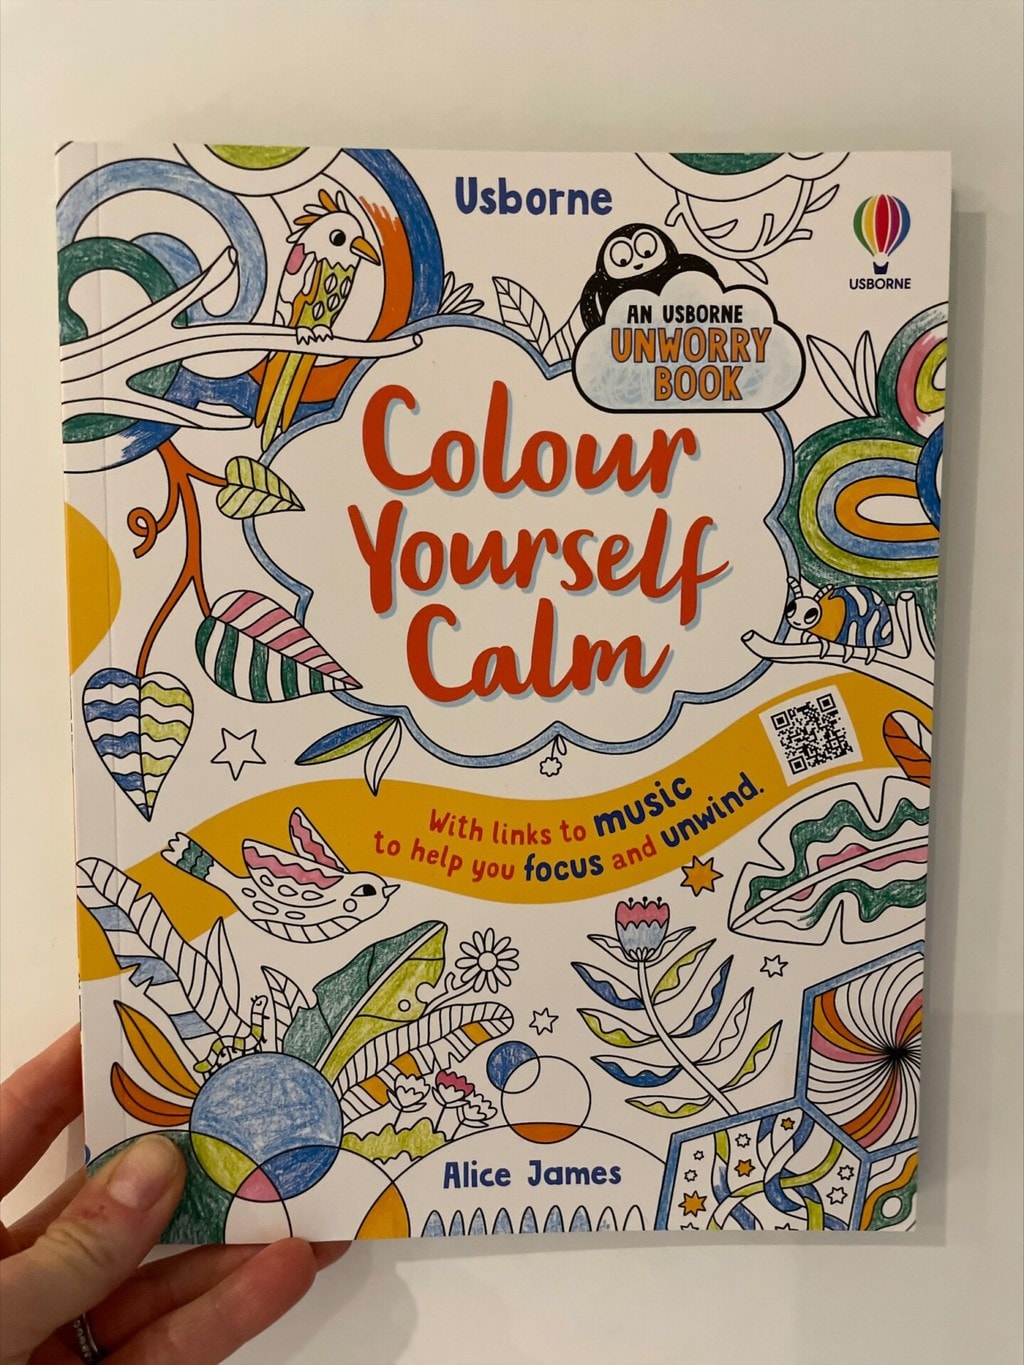 Colour Yourself Calm